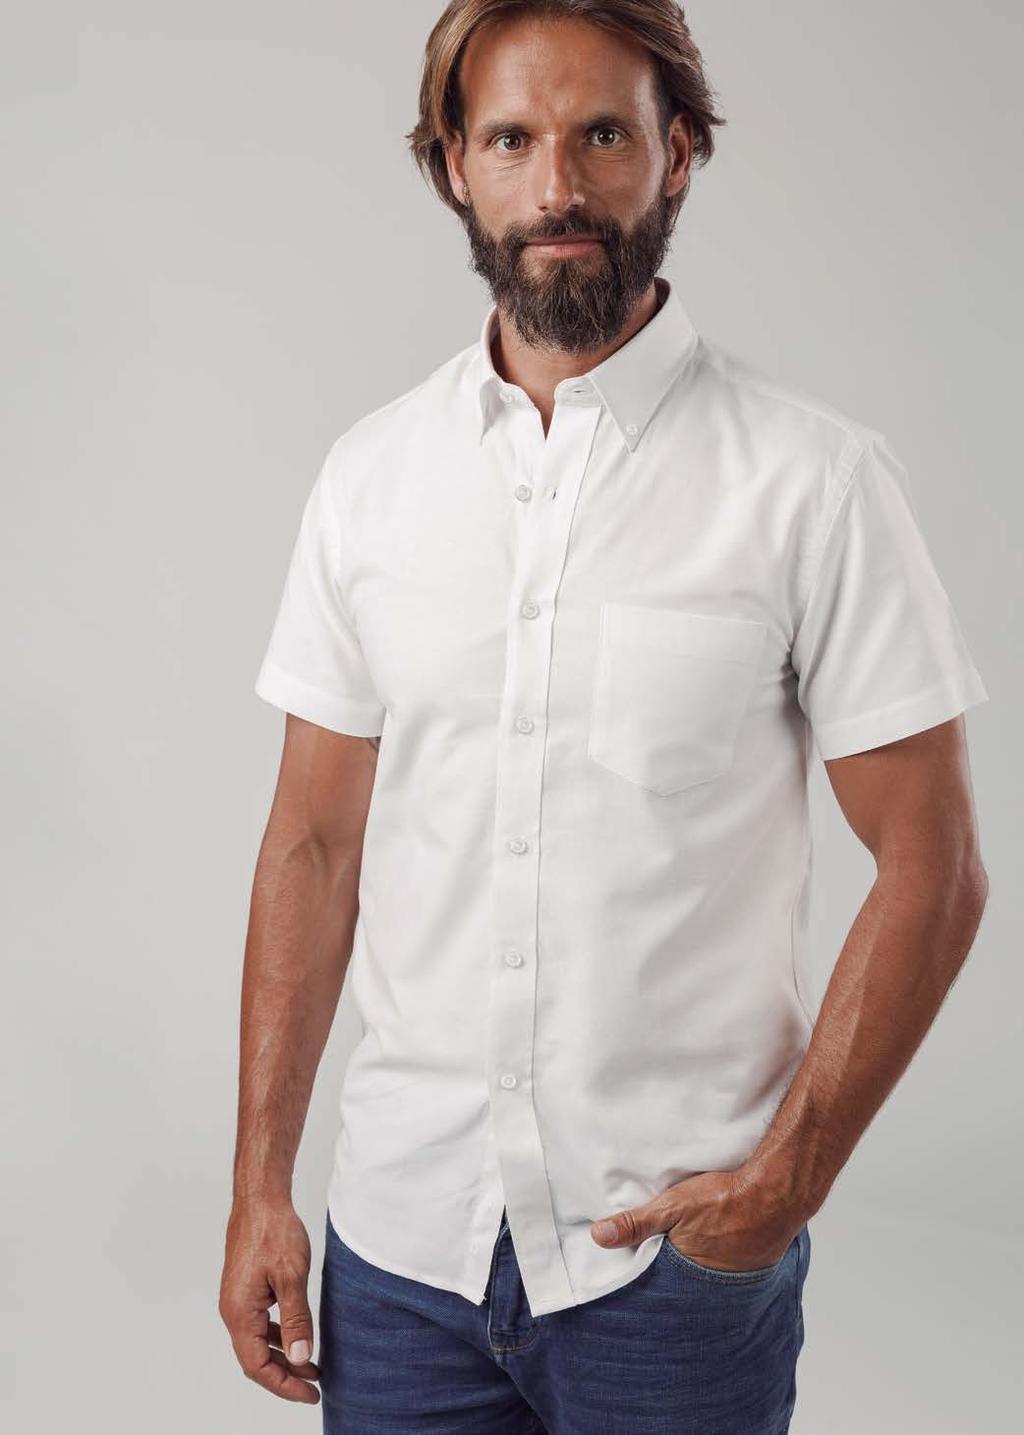 ONDON camisa oxford para homem 130 g/m 2 Branco zul Céu 70% algodão 30% poliéster Manga curta Bolso do lado esquerdo Colarinho com 2 botões Carcela